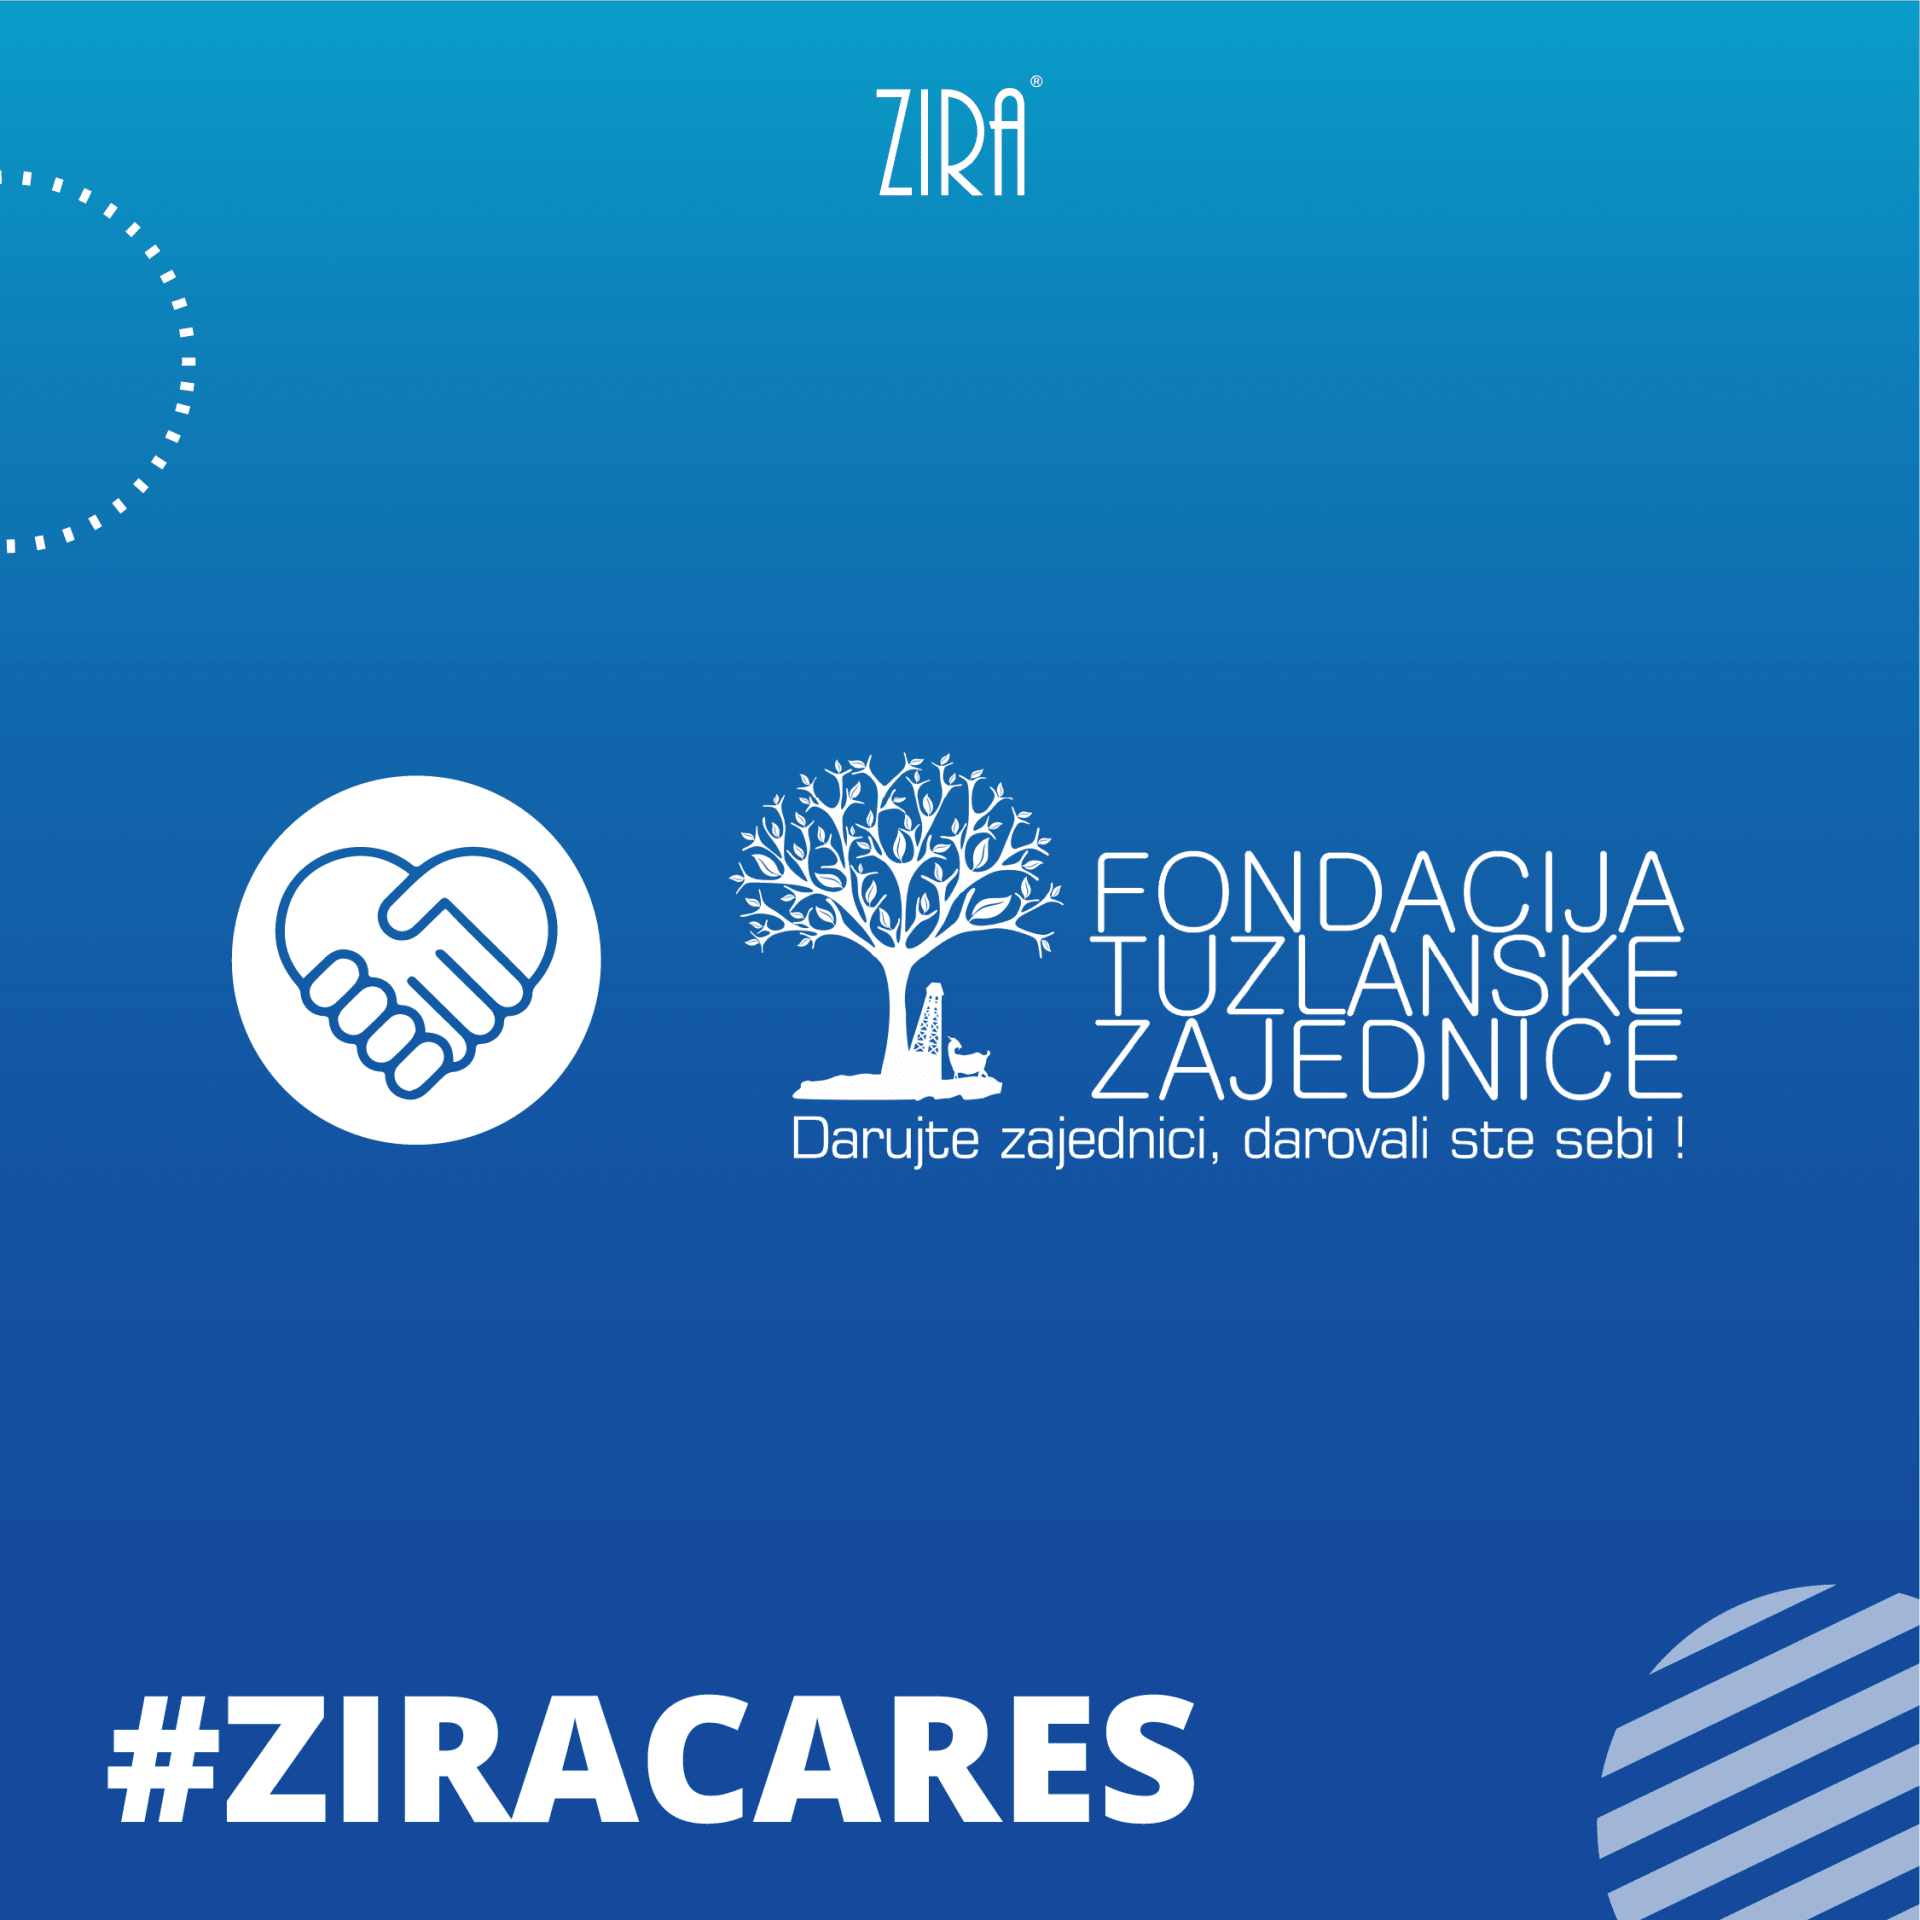 ZIRA- Fondacija-tuzlanske-zajednice